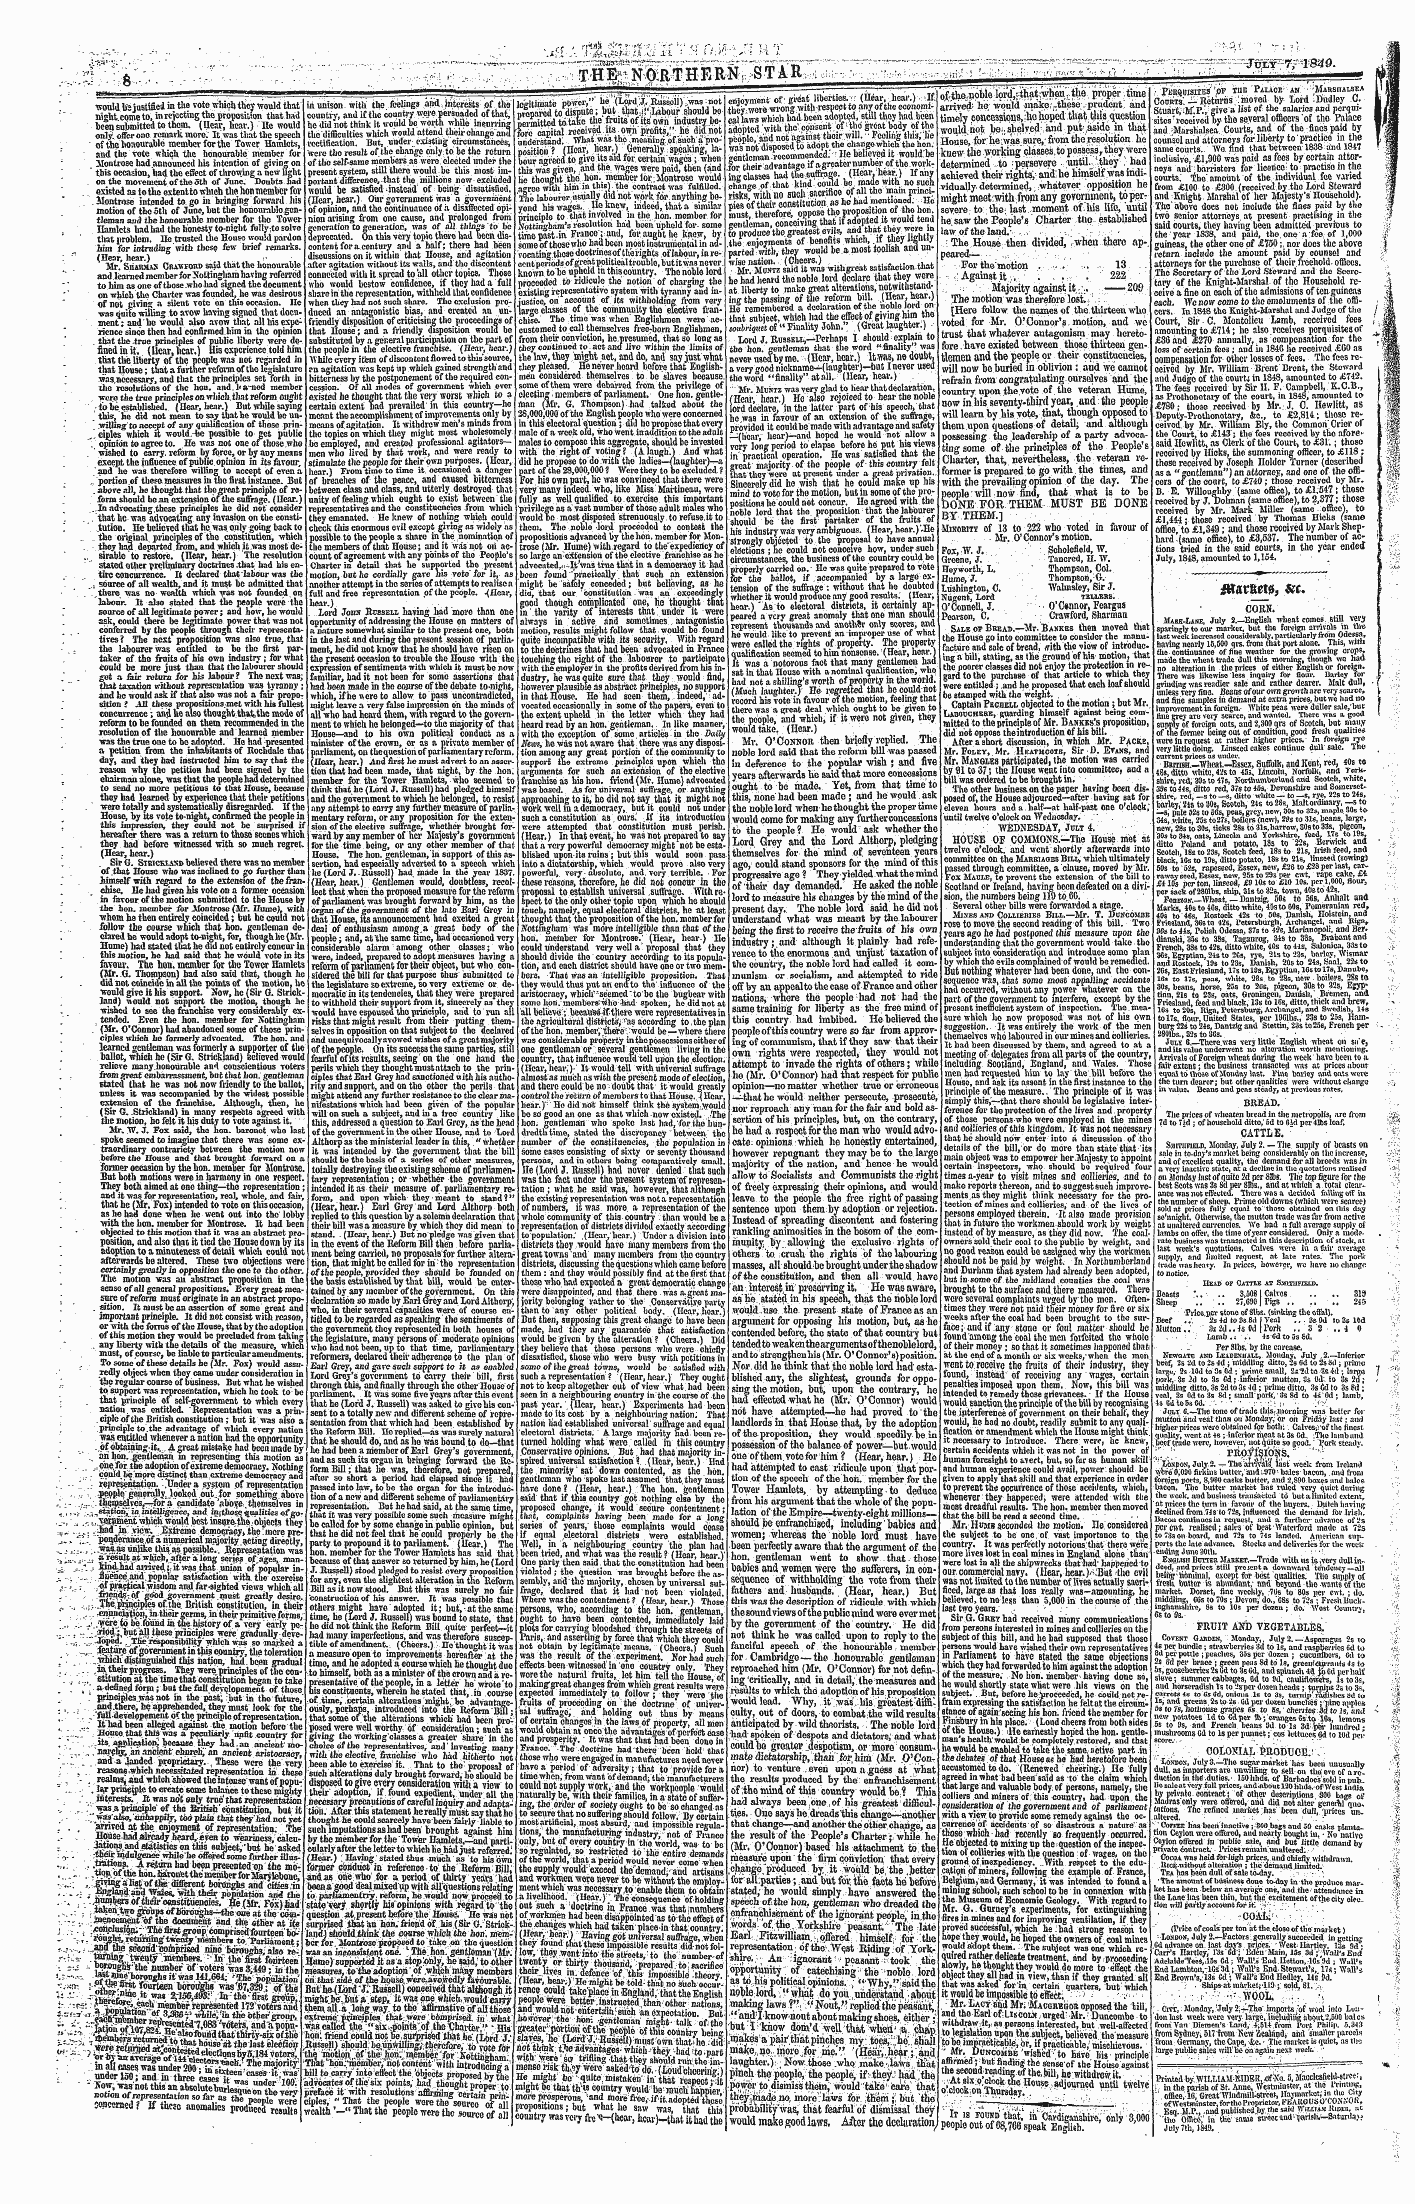 Northern Star (1837-1852): jS F Y, 3rd edition - W&Vim,. &C